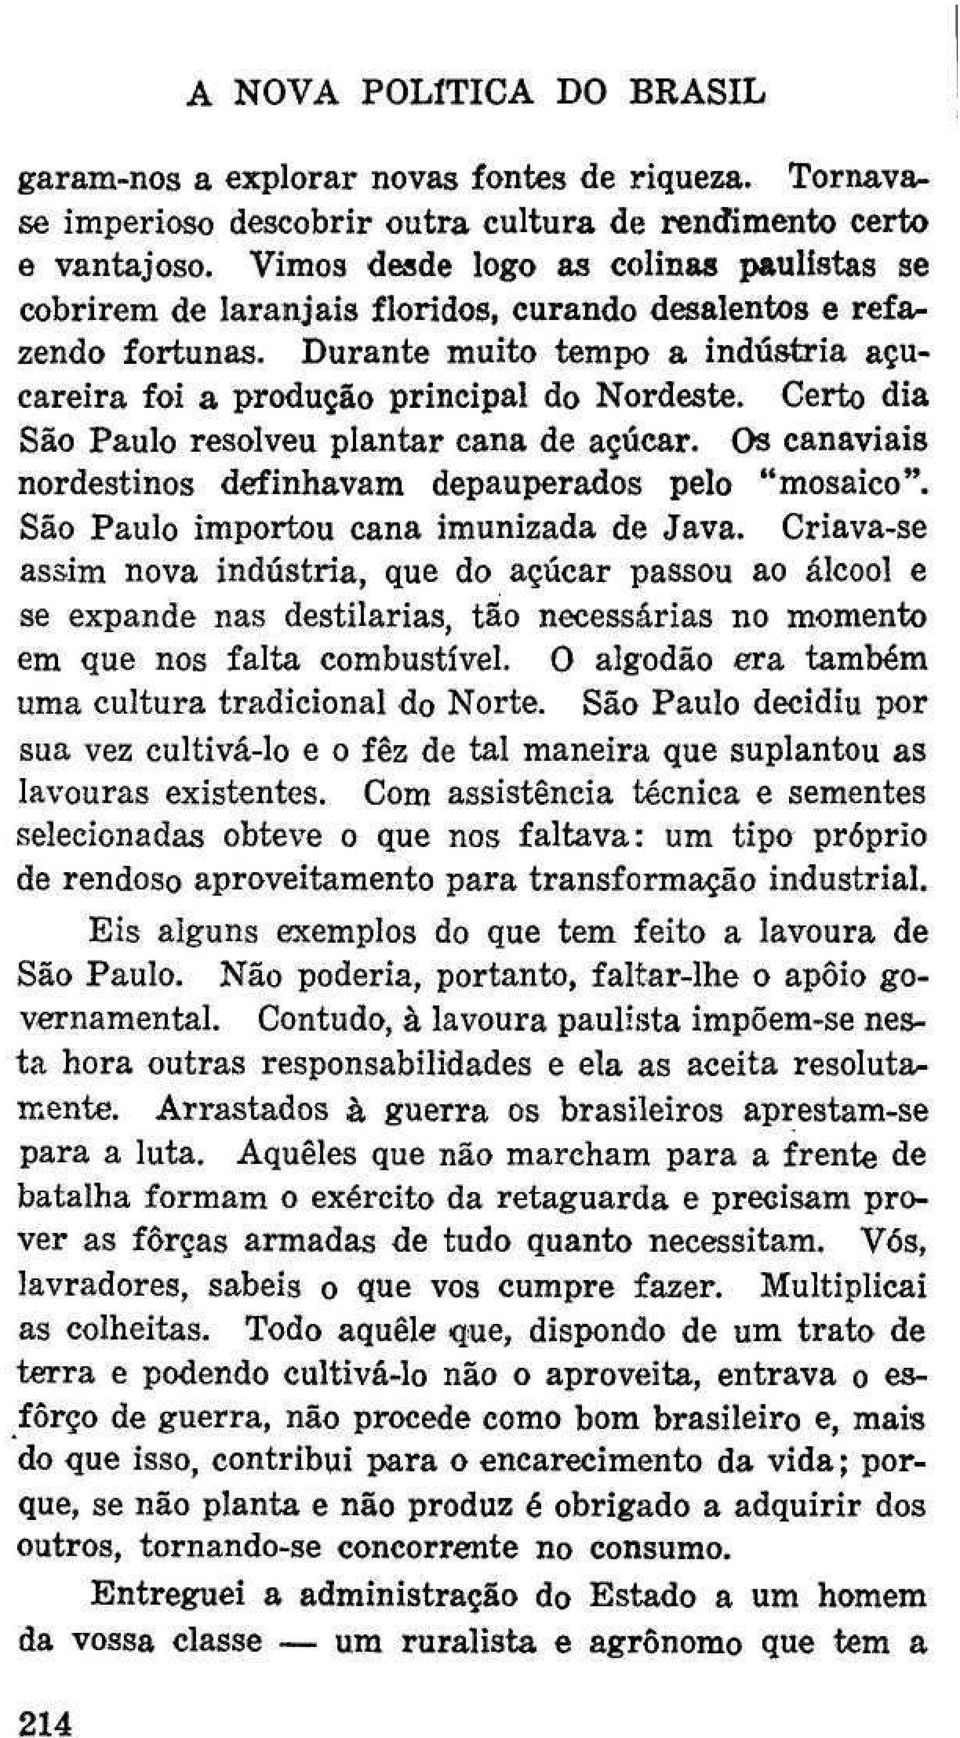 Certo dia São Paulo resolveu plantar cana de açúcar. Os canaviais nordestinos definhavam depauperados pelo "mosaico" São Paulo importou cana imunizada de Java.